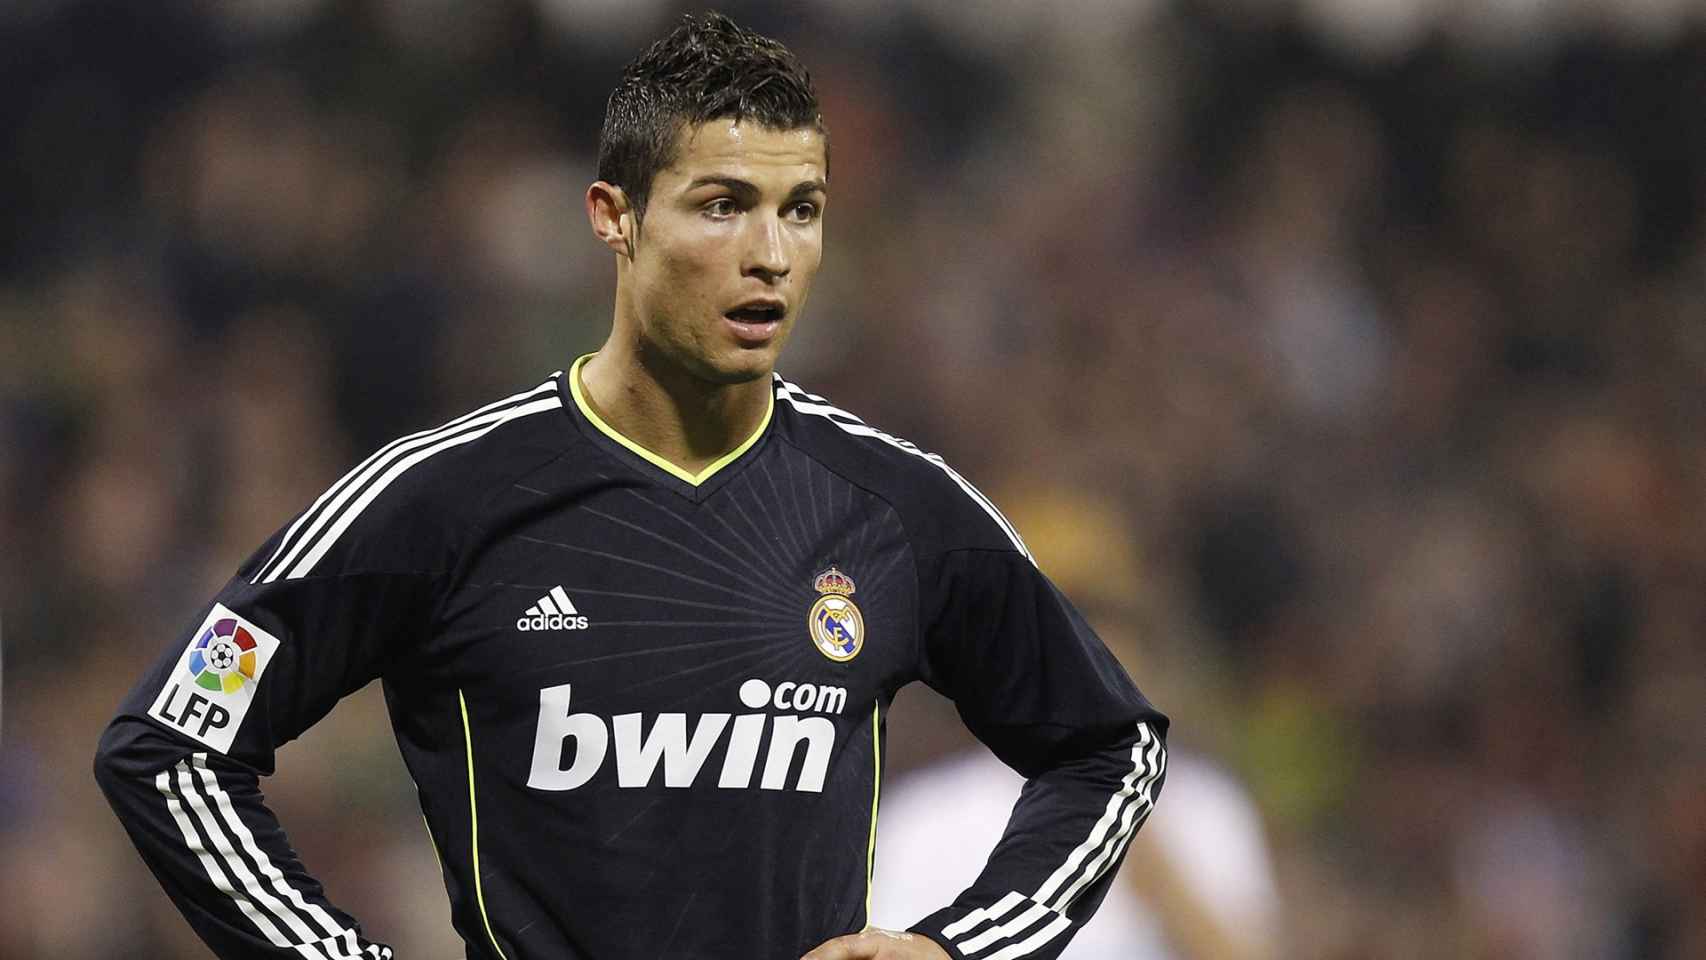 Cristiano Ronaldo vistiendo la equipación del Real Madrid cuando era patrocinado por Bwin.